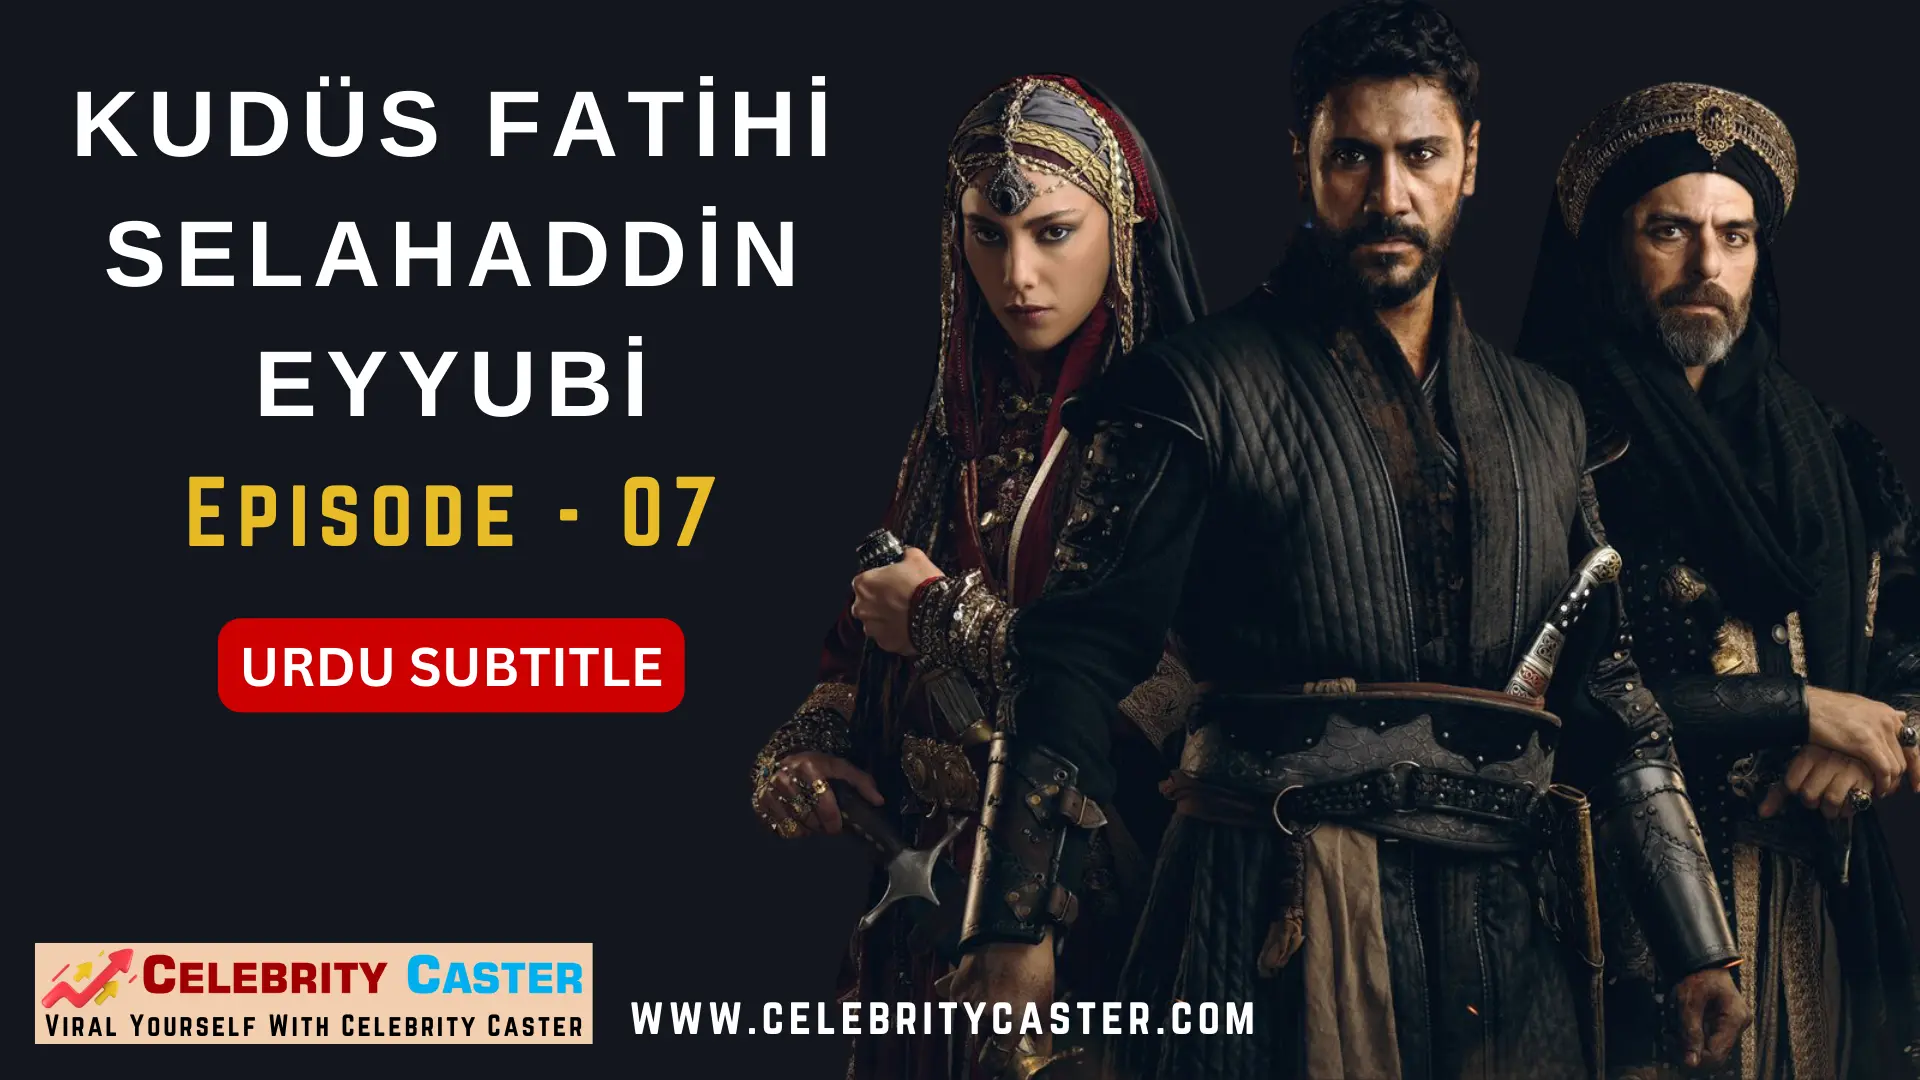 Fatihi Kudus Salahuddin Ayyubi Episode 1 Urdu Subtitle Free Download